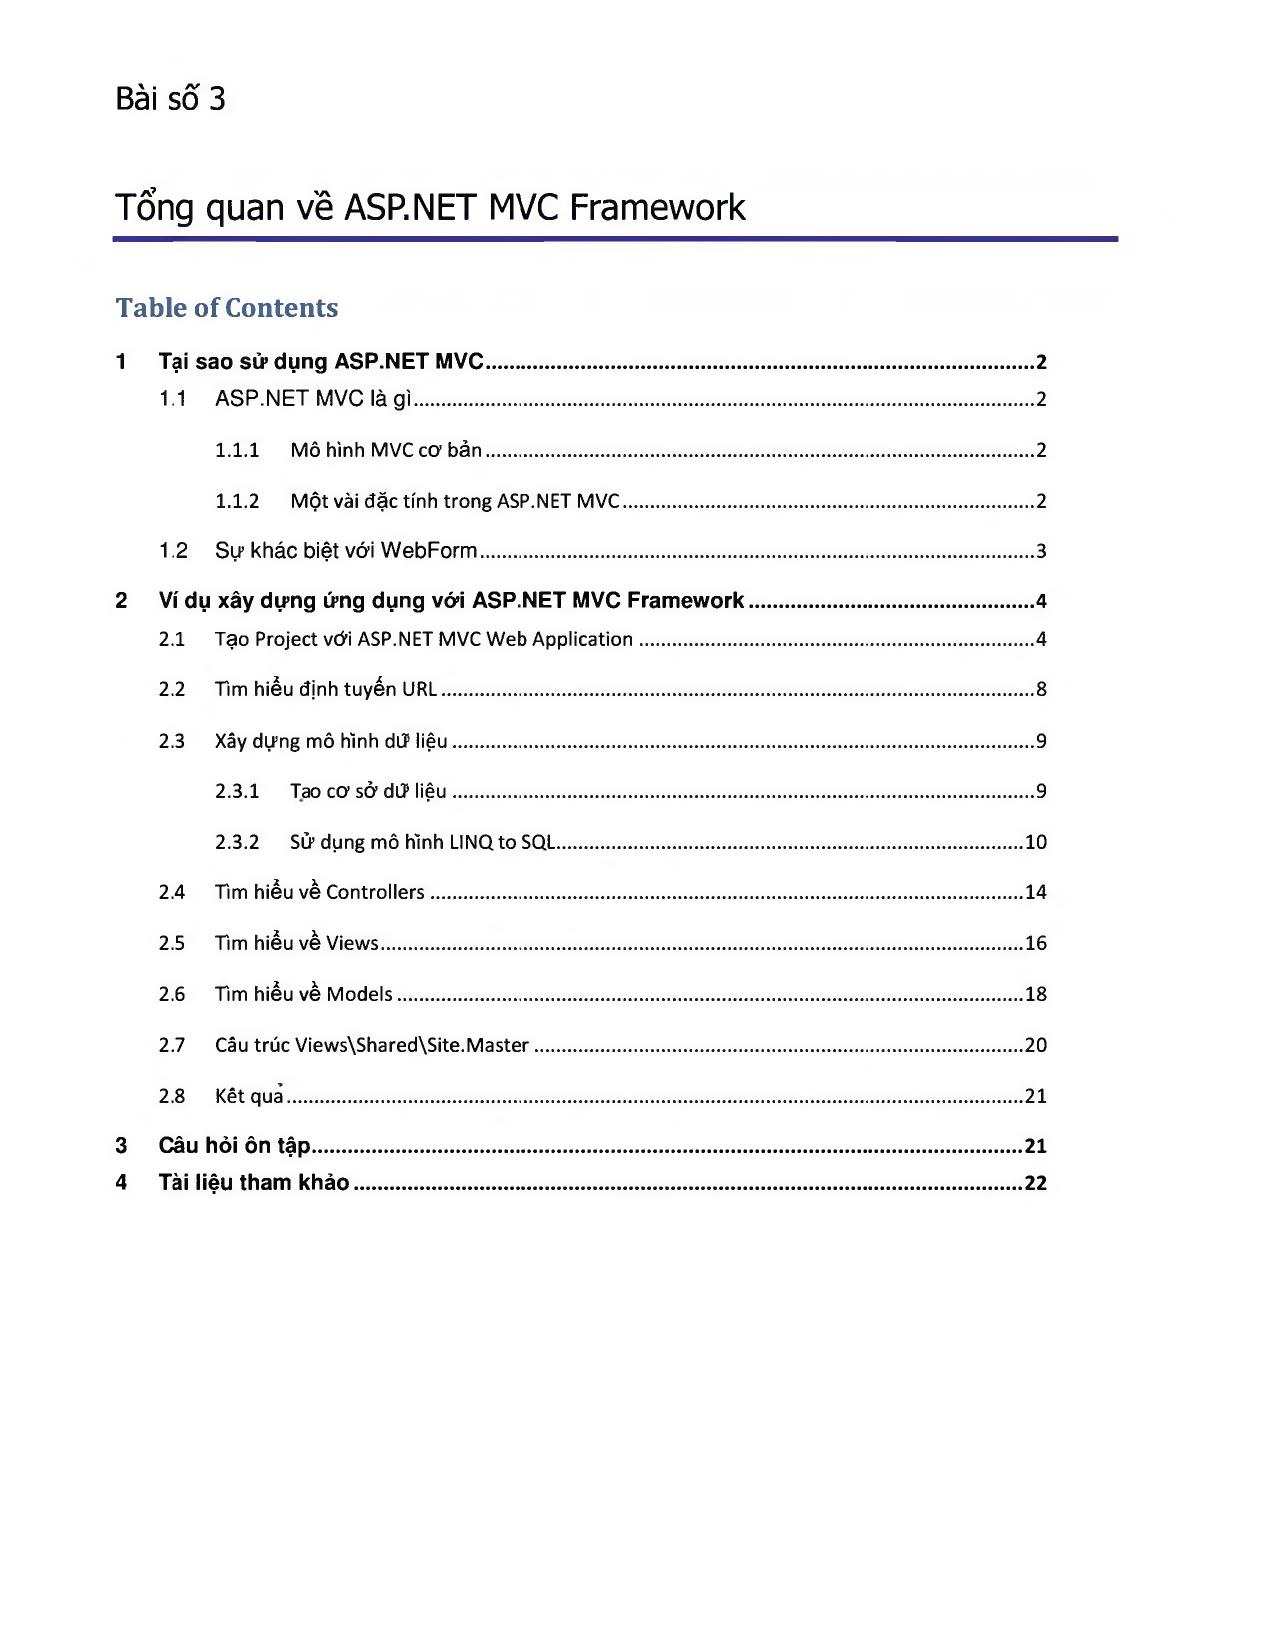 Tổng quan về ASP.NET MVC Framework trang 1